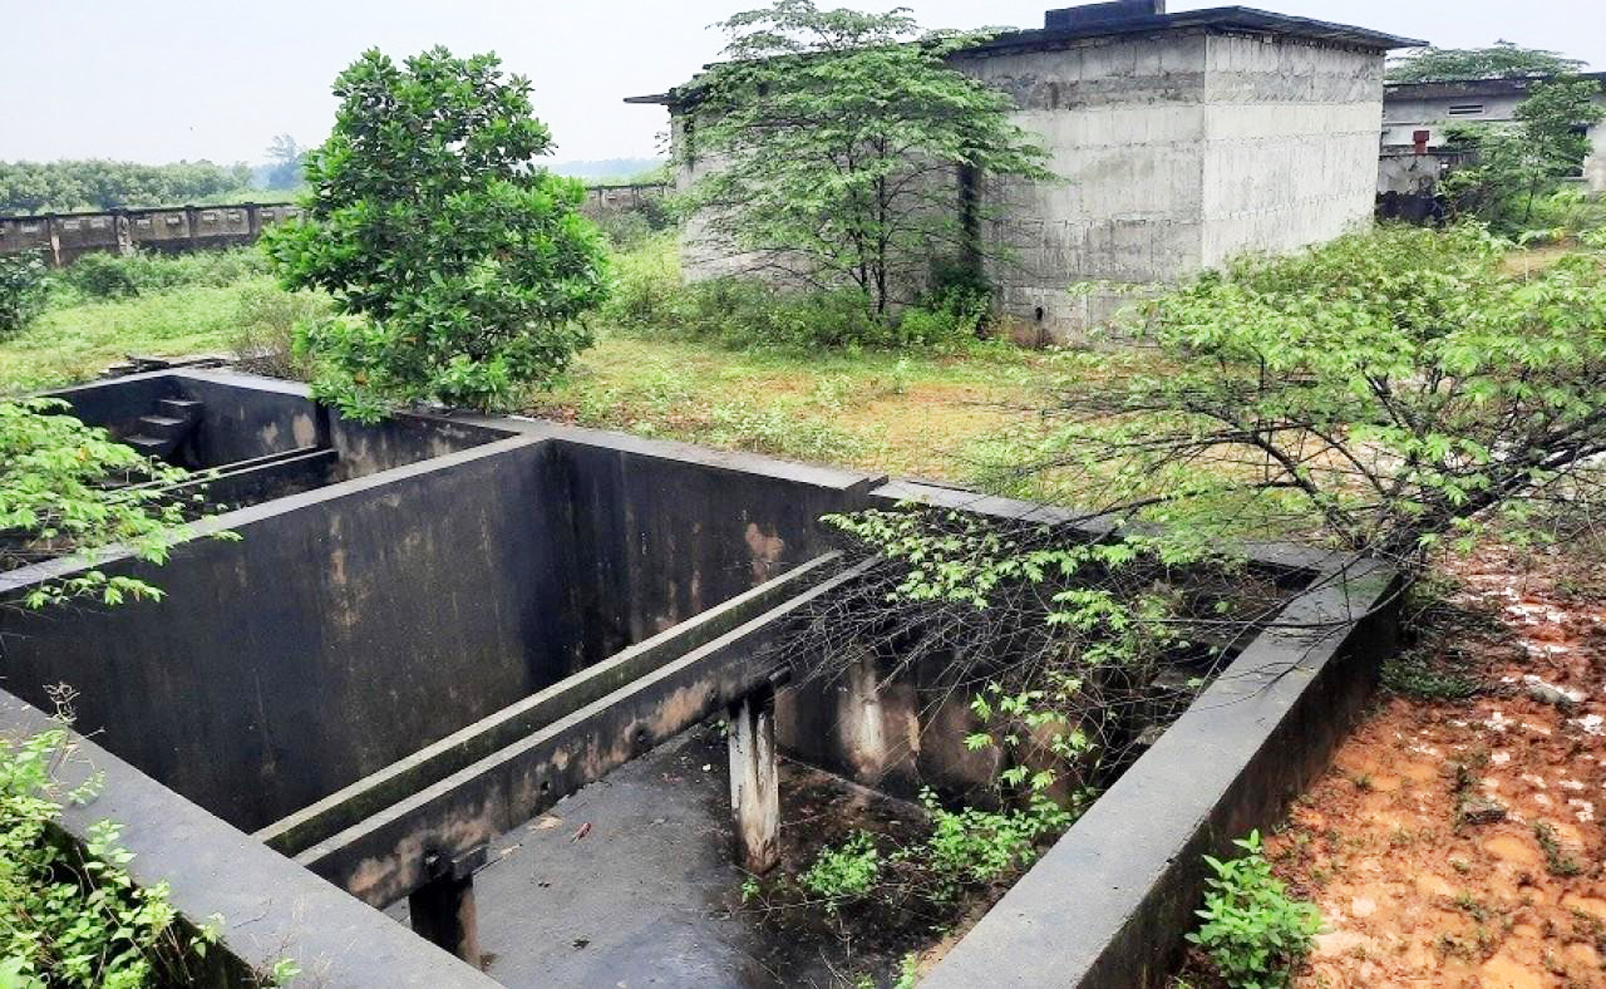 Dự án xây dựng hệ thống cấp nước sạch ở xã Hải Chánh (H.Hải Lăng, tỉnh Quảng Trị)  có vốn đầu tư hơn 30 tỷ đồng, nằm “đắp chiếu” hơn sáu năm nay